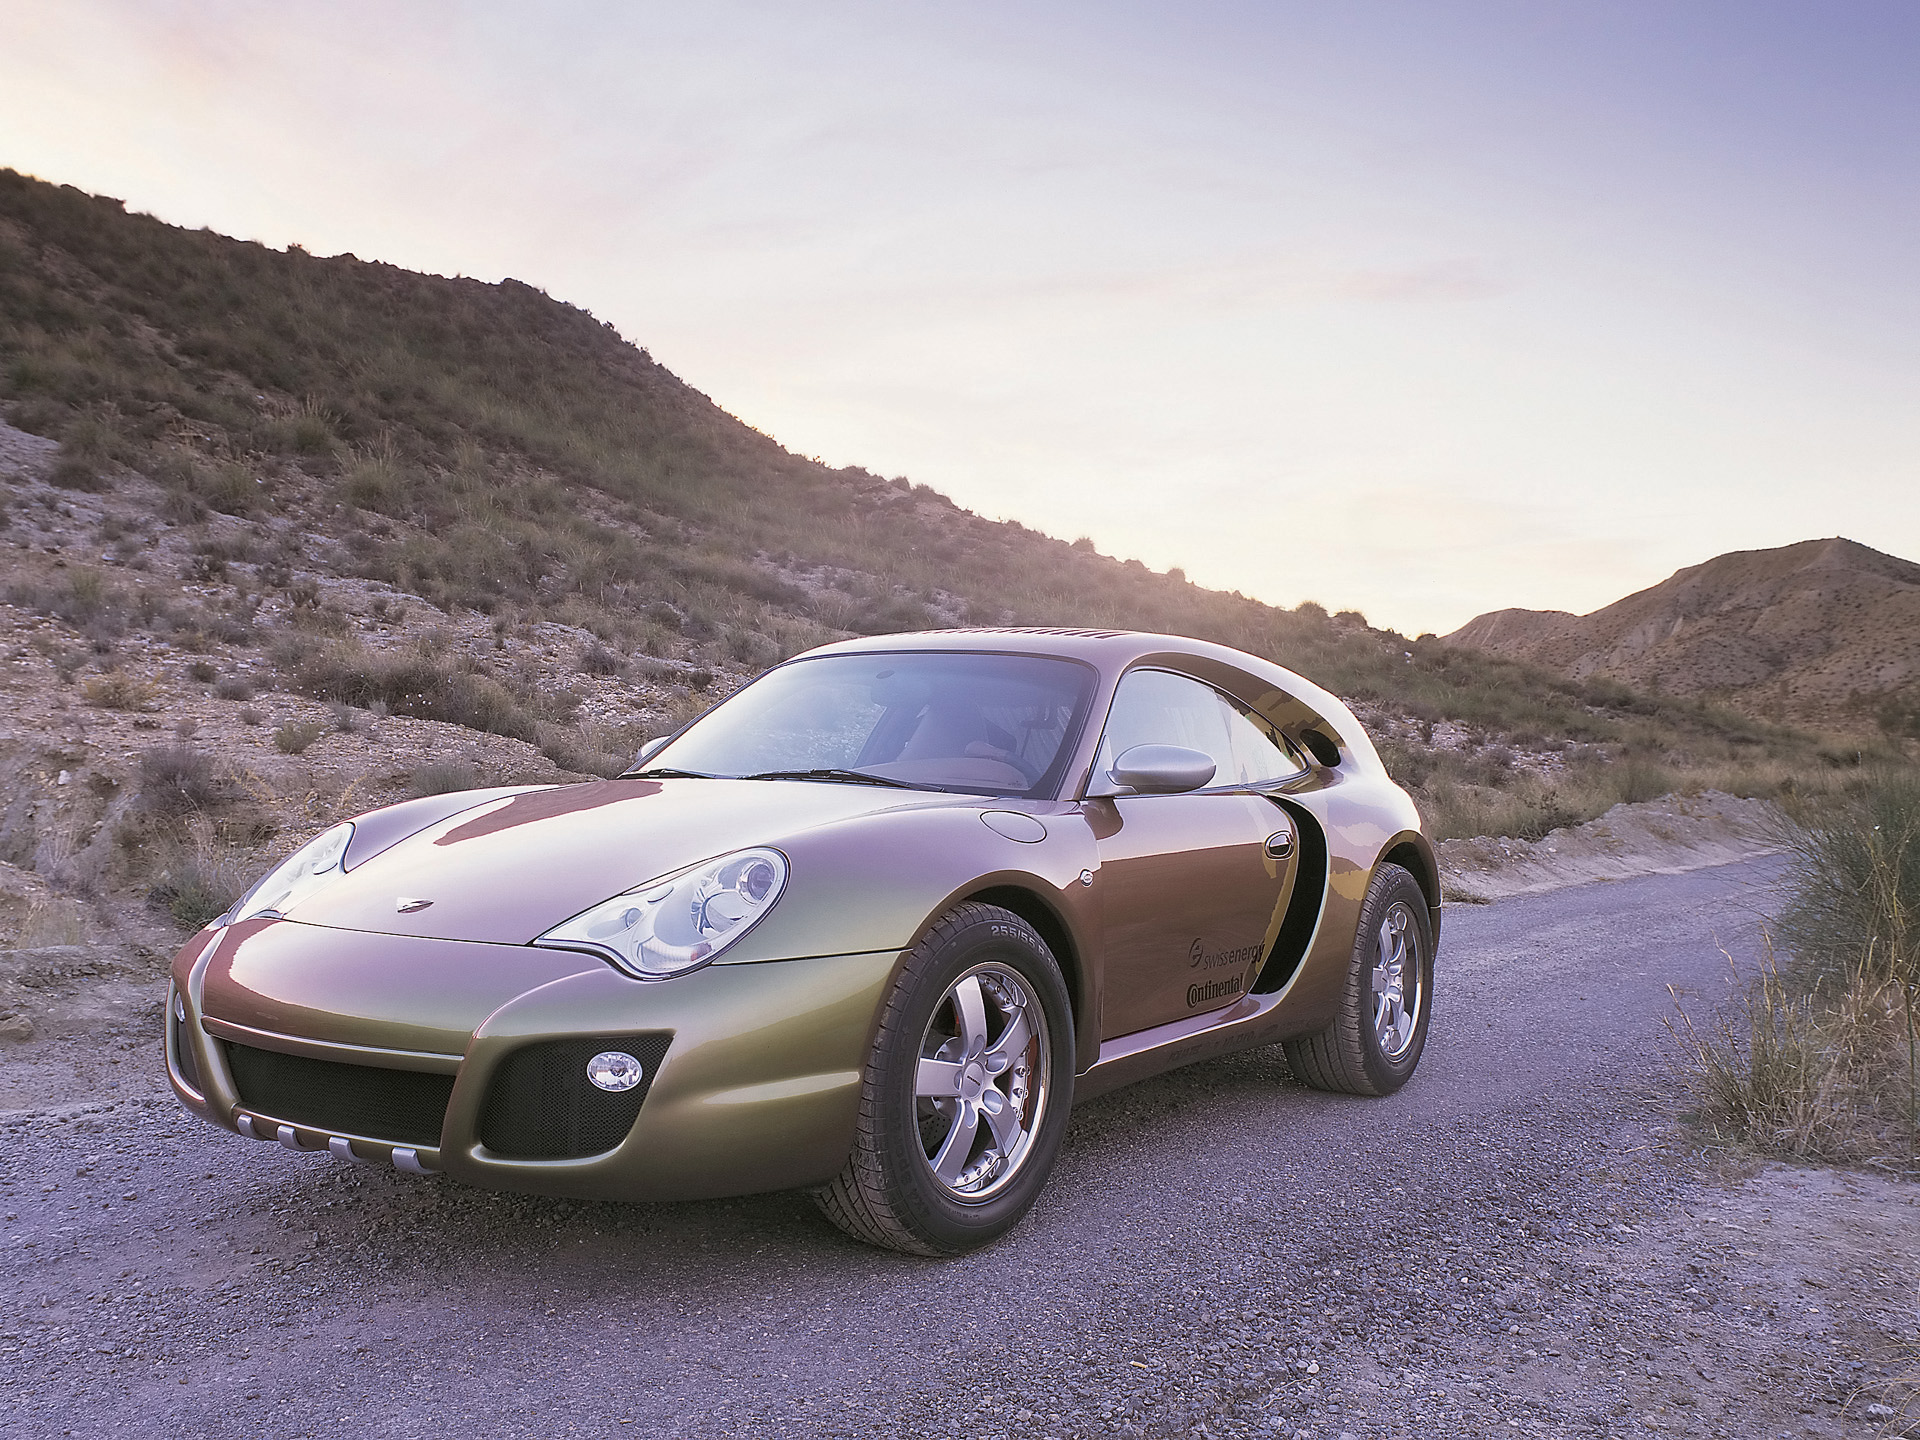 2003, Rinspeed, Porsche, Bedouin, 996, Turbo, Concept, Supercar Wallpaper